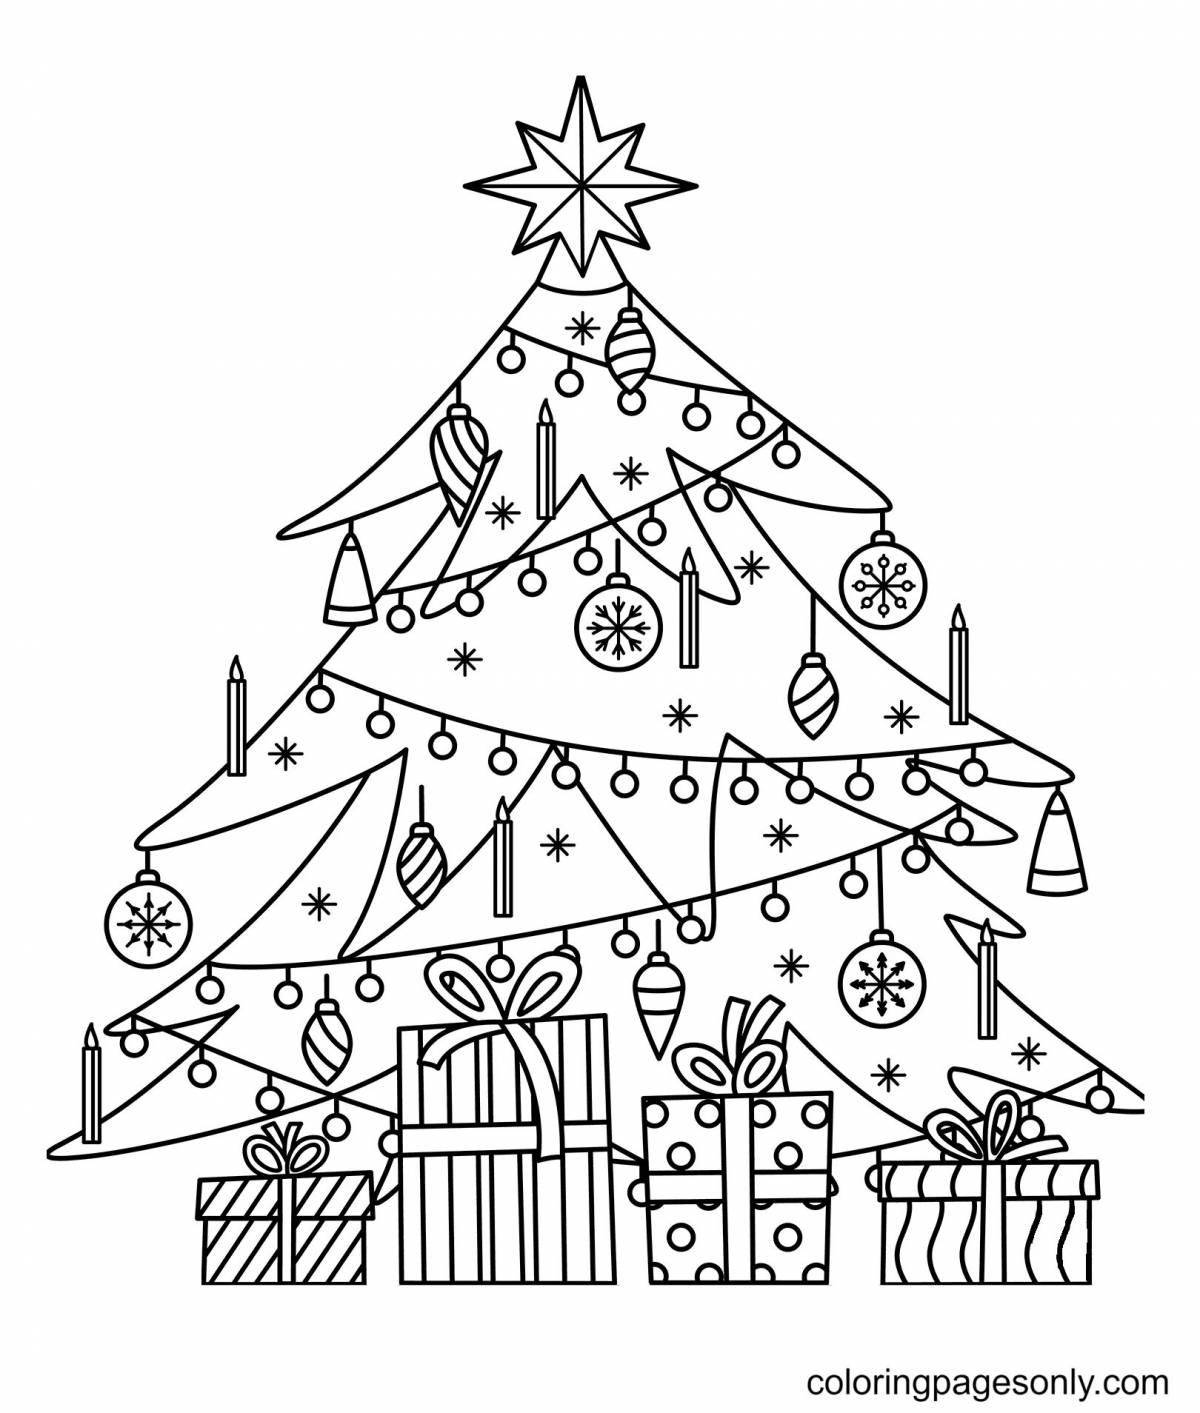 Раскраска «веселая рождественская елка» для детей 5-6 лет